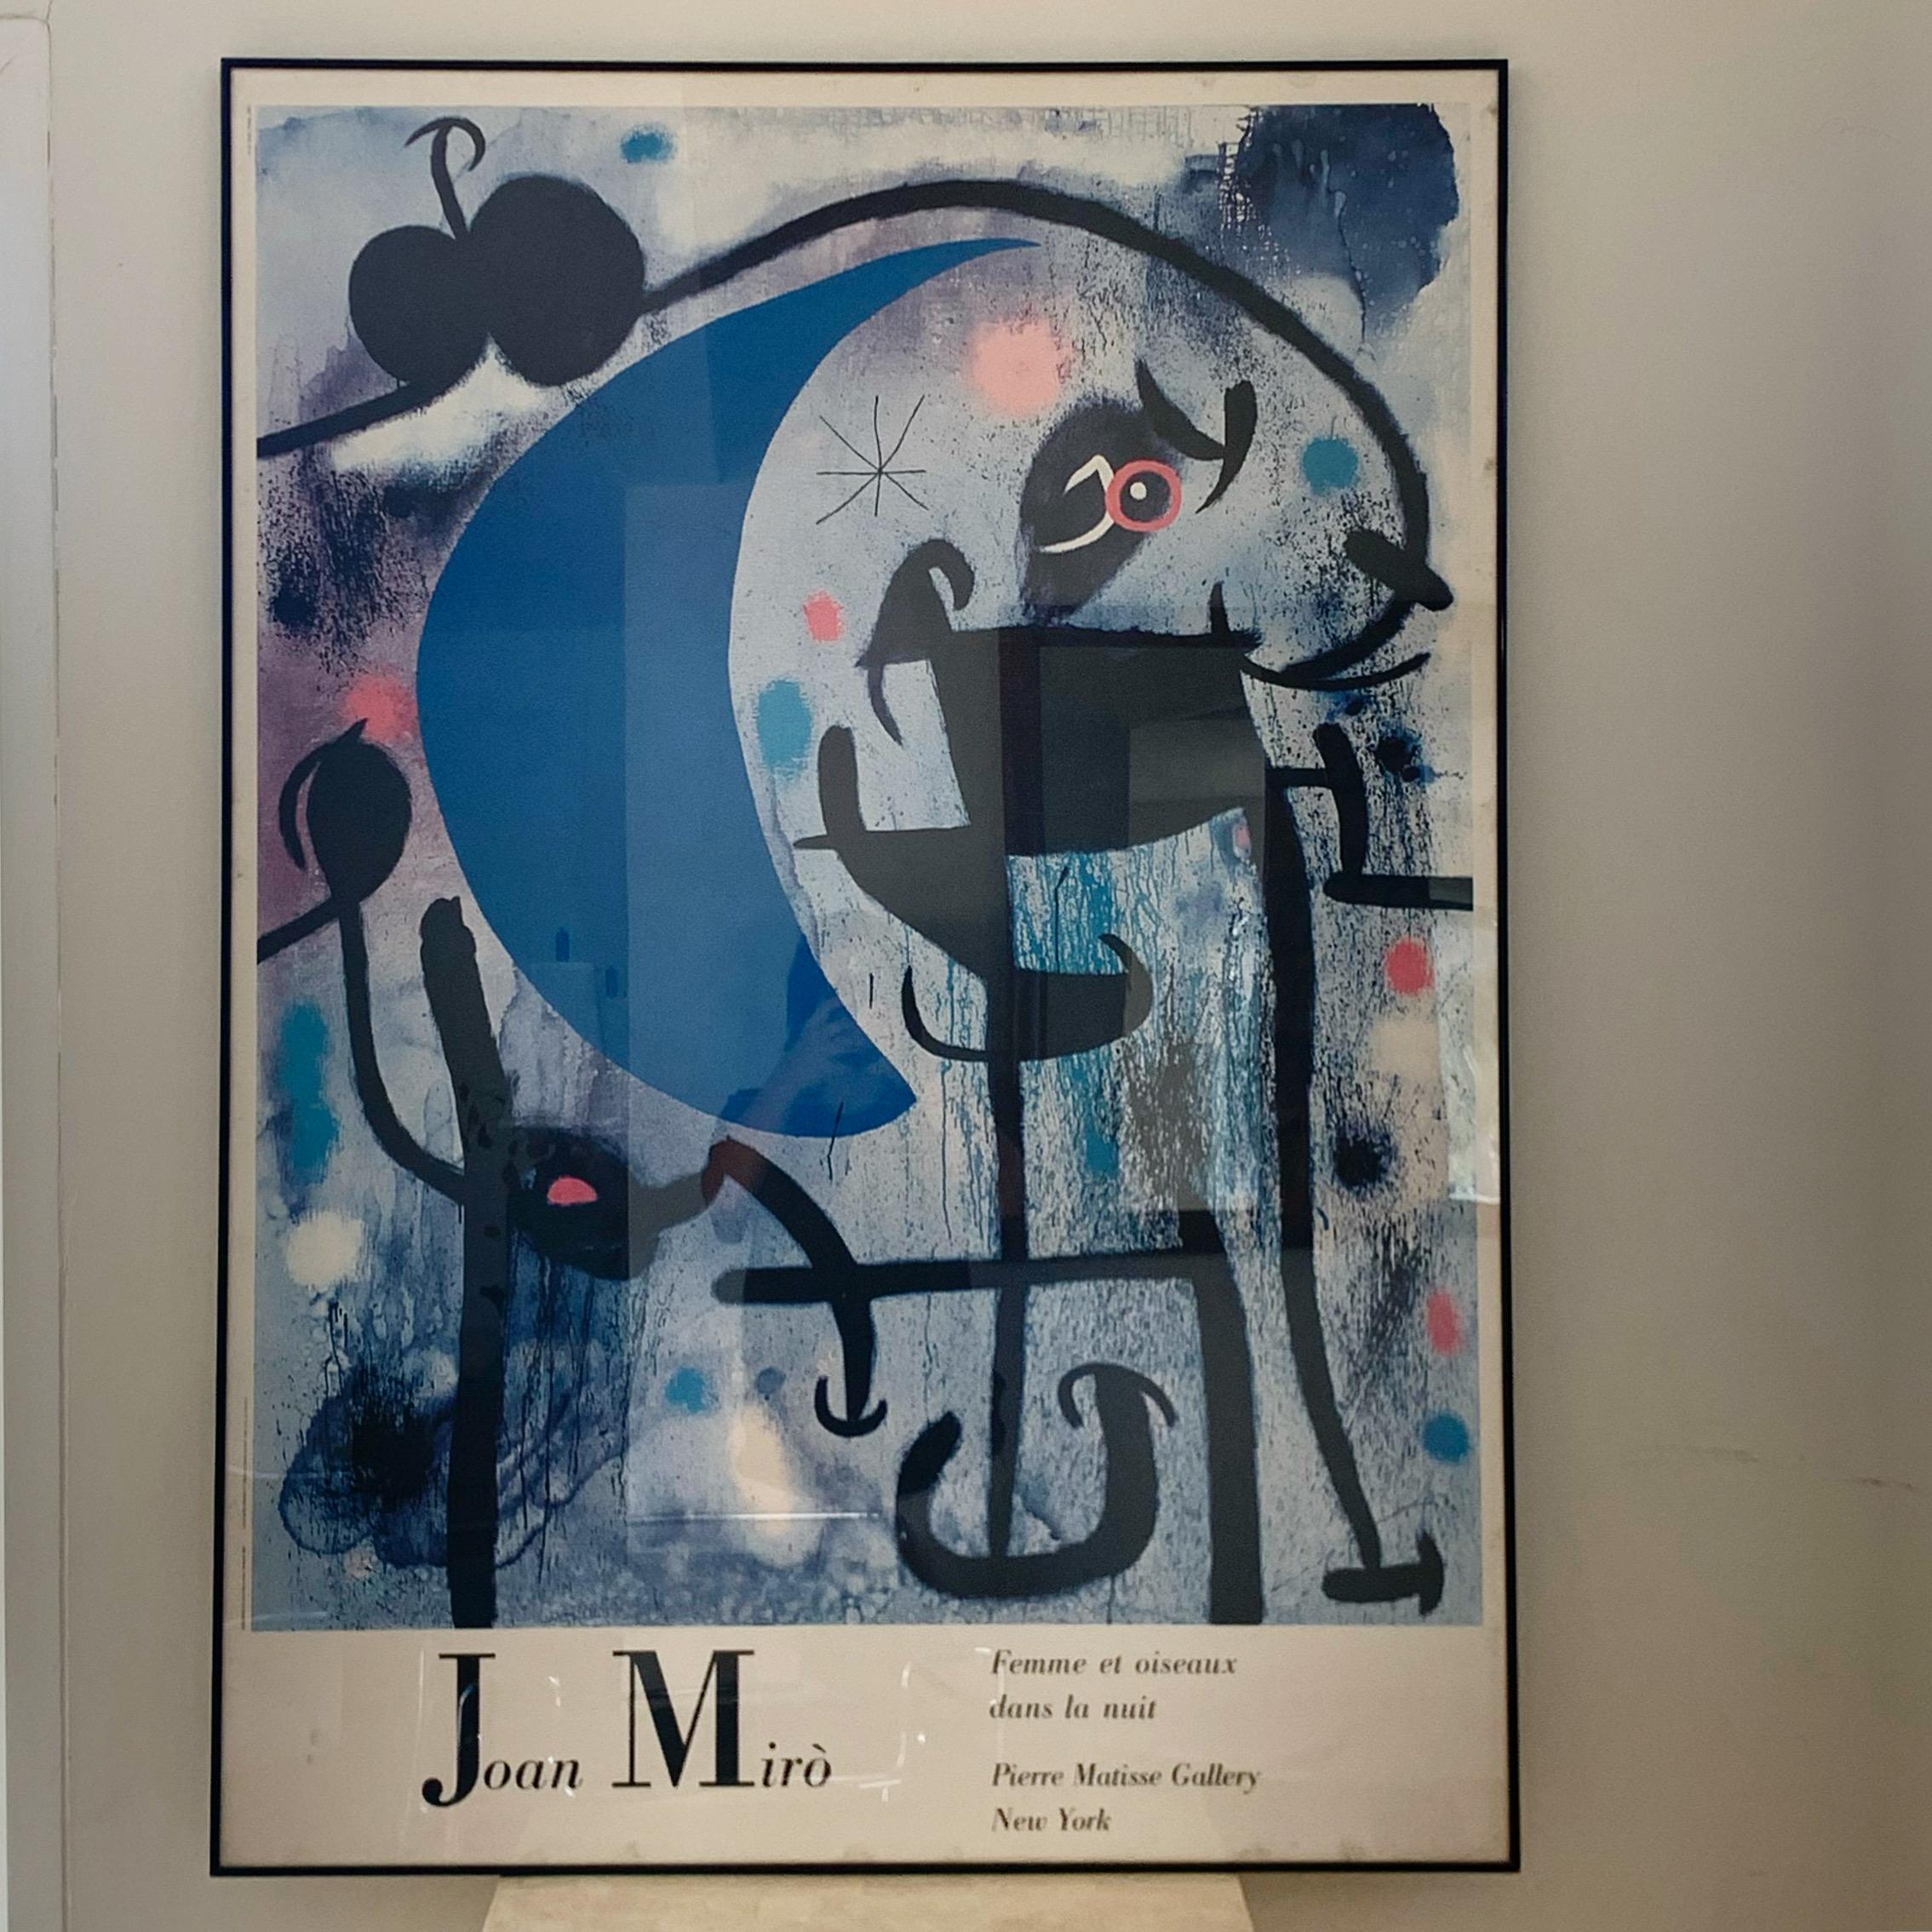 Huge Framed Joan Miró Poster « Femme Et Oiseaux », Pierre Matisse Gallery 1987 3